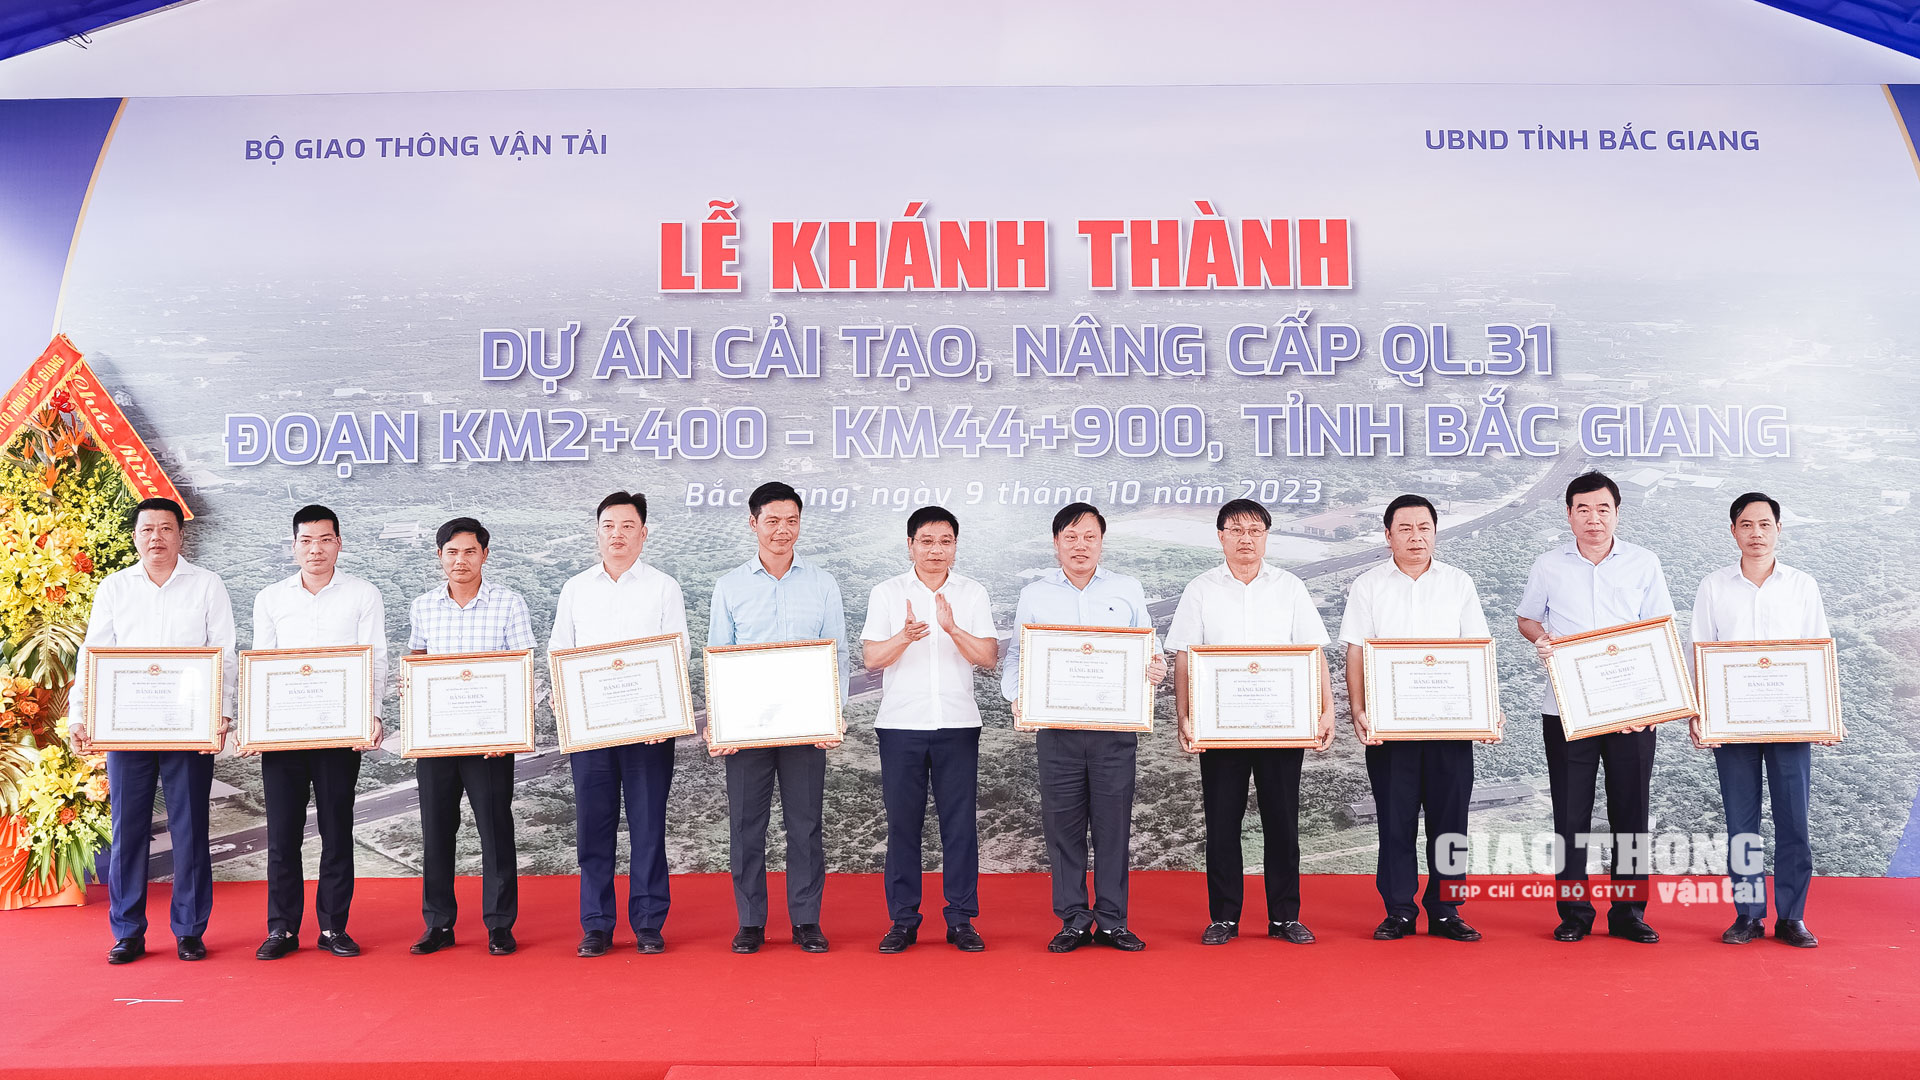 Khánh thành, đưa vào khai thác QL31 nâng cấp tỉnh Bắc Giang - Ảnh 4.